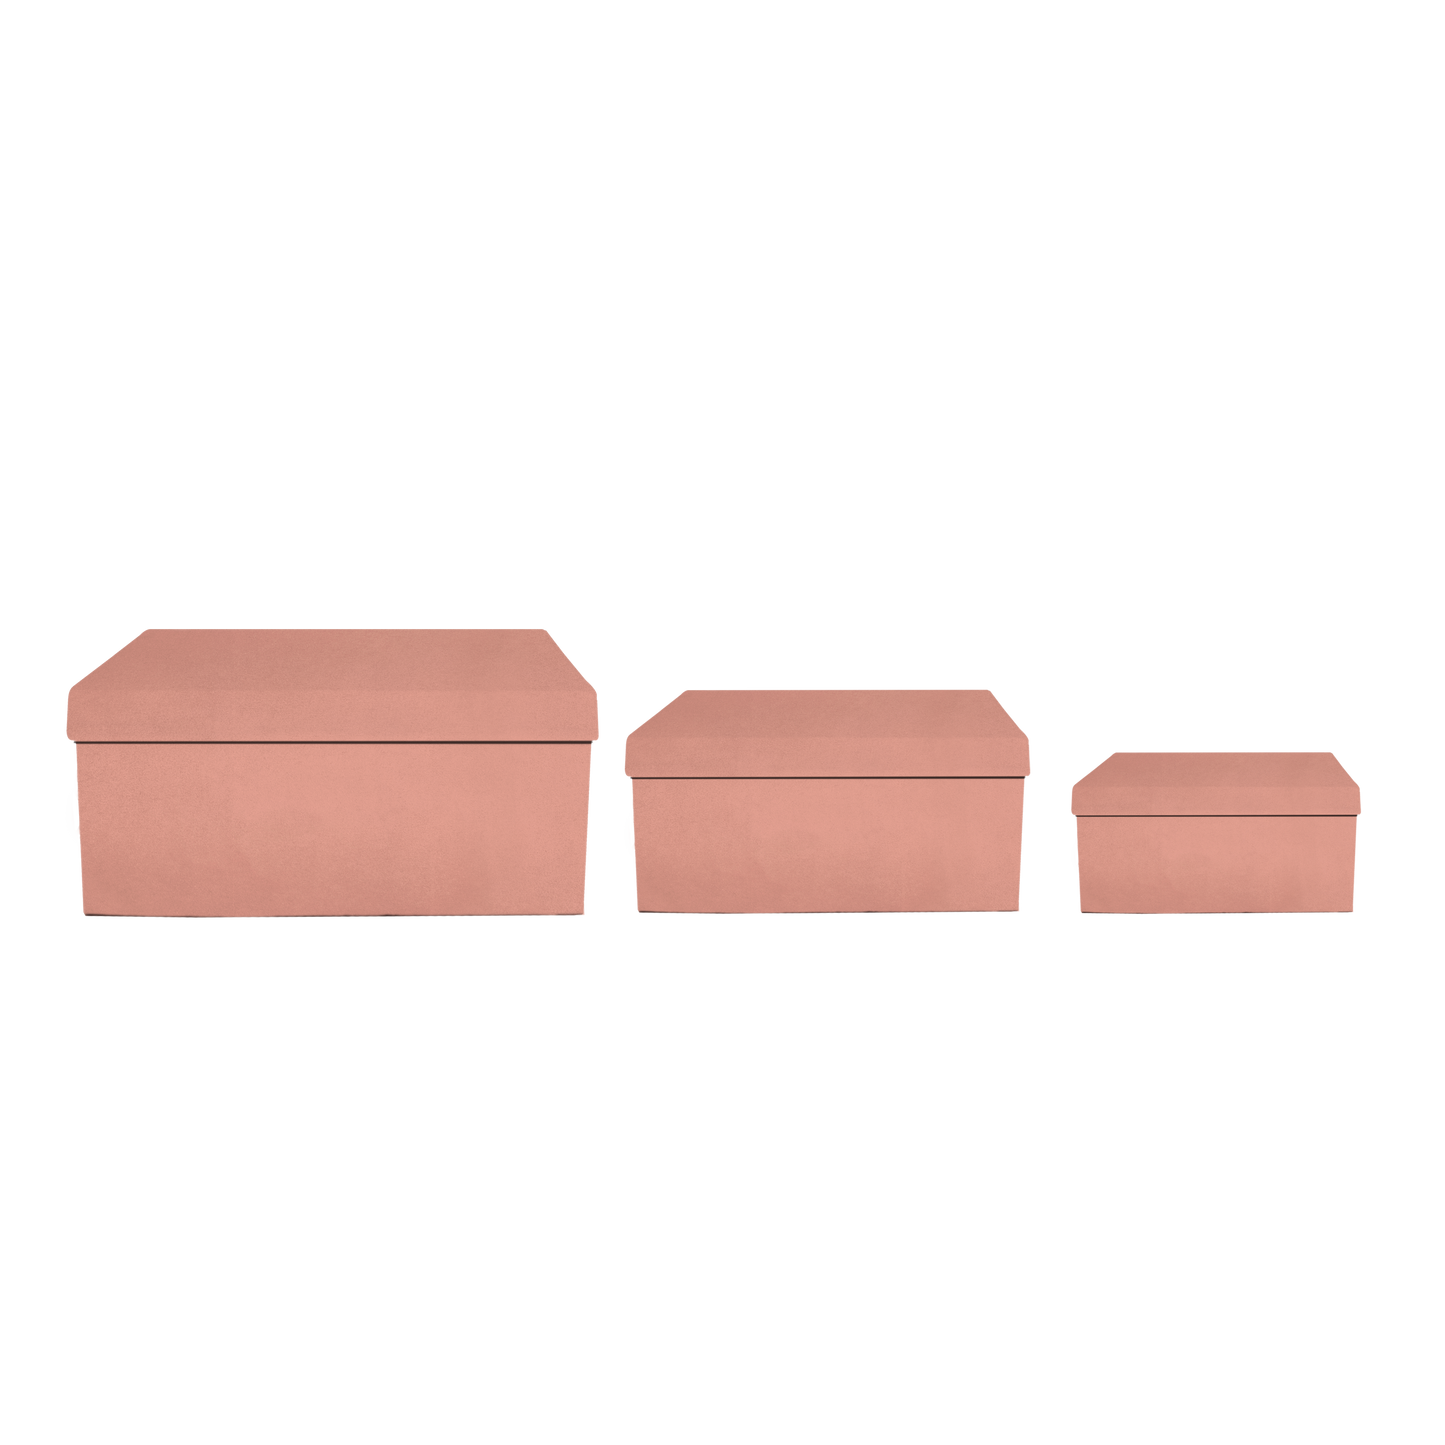 Kit 3 different sizes rectangular shape boxes 3 in 1 - Velvet Pink